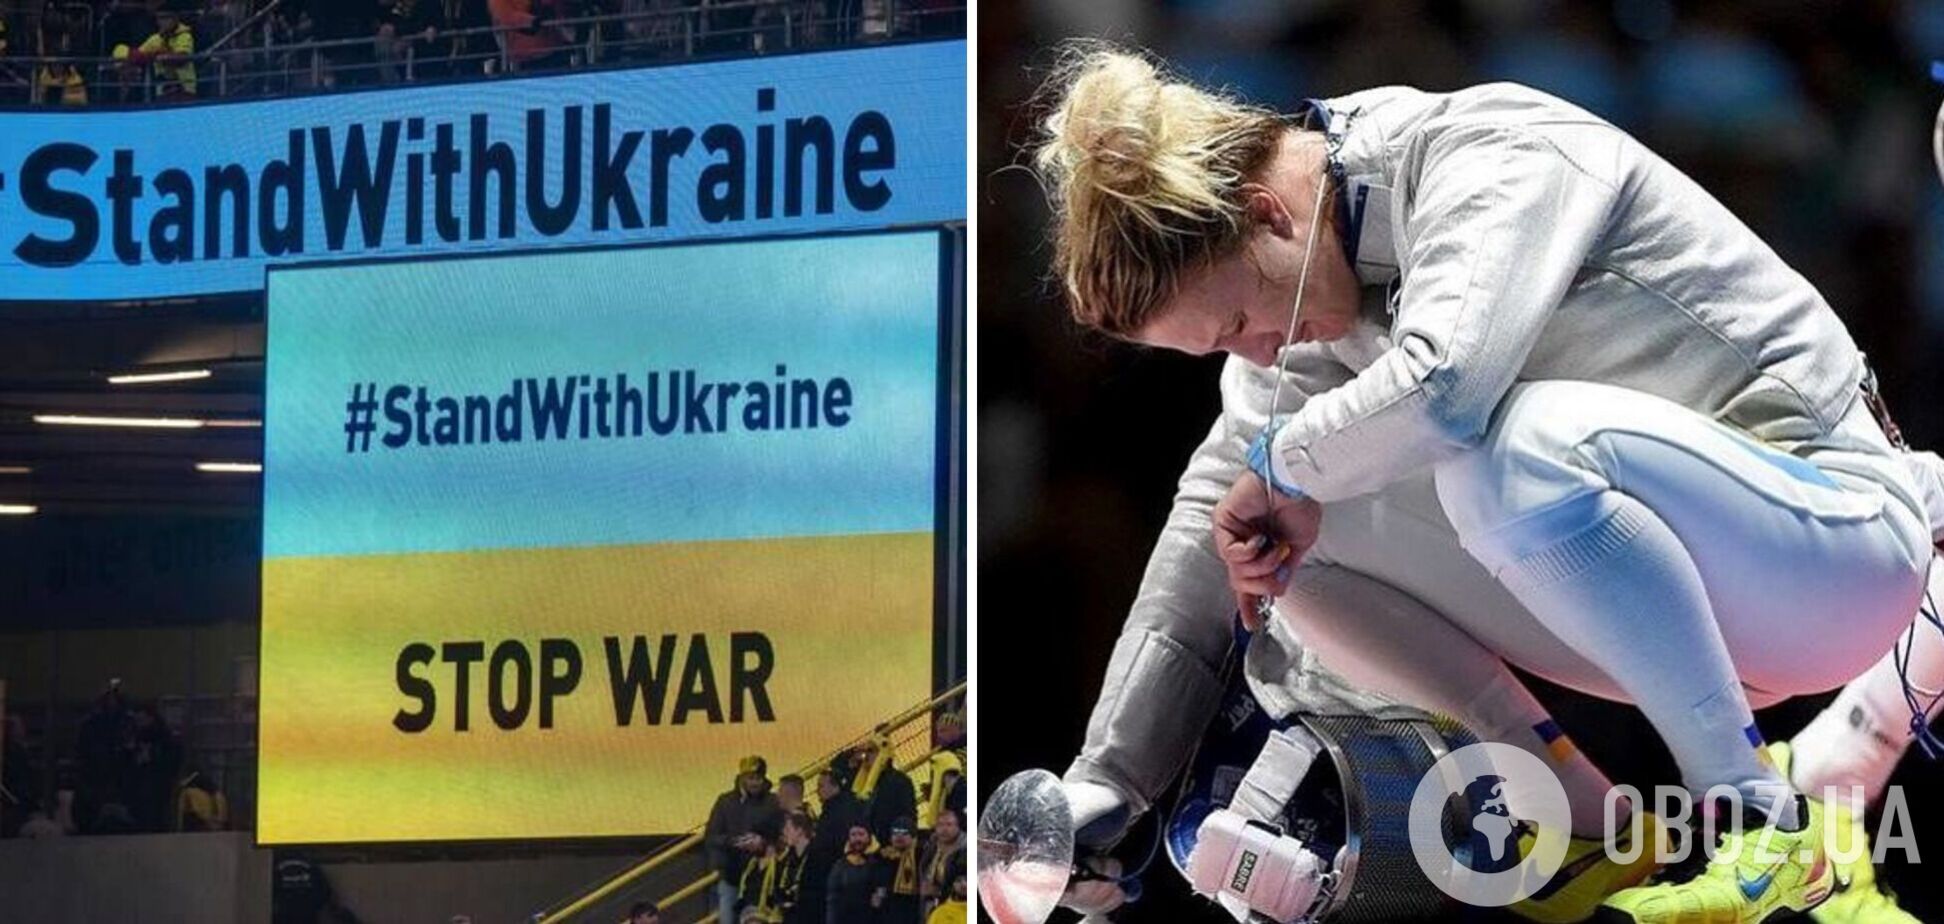 Международная федерация запретила символику Украины на этапе Гран-при в угоду России